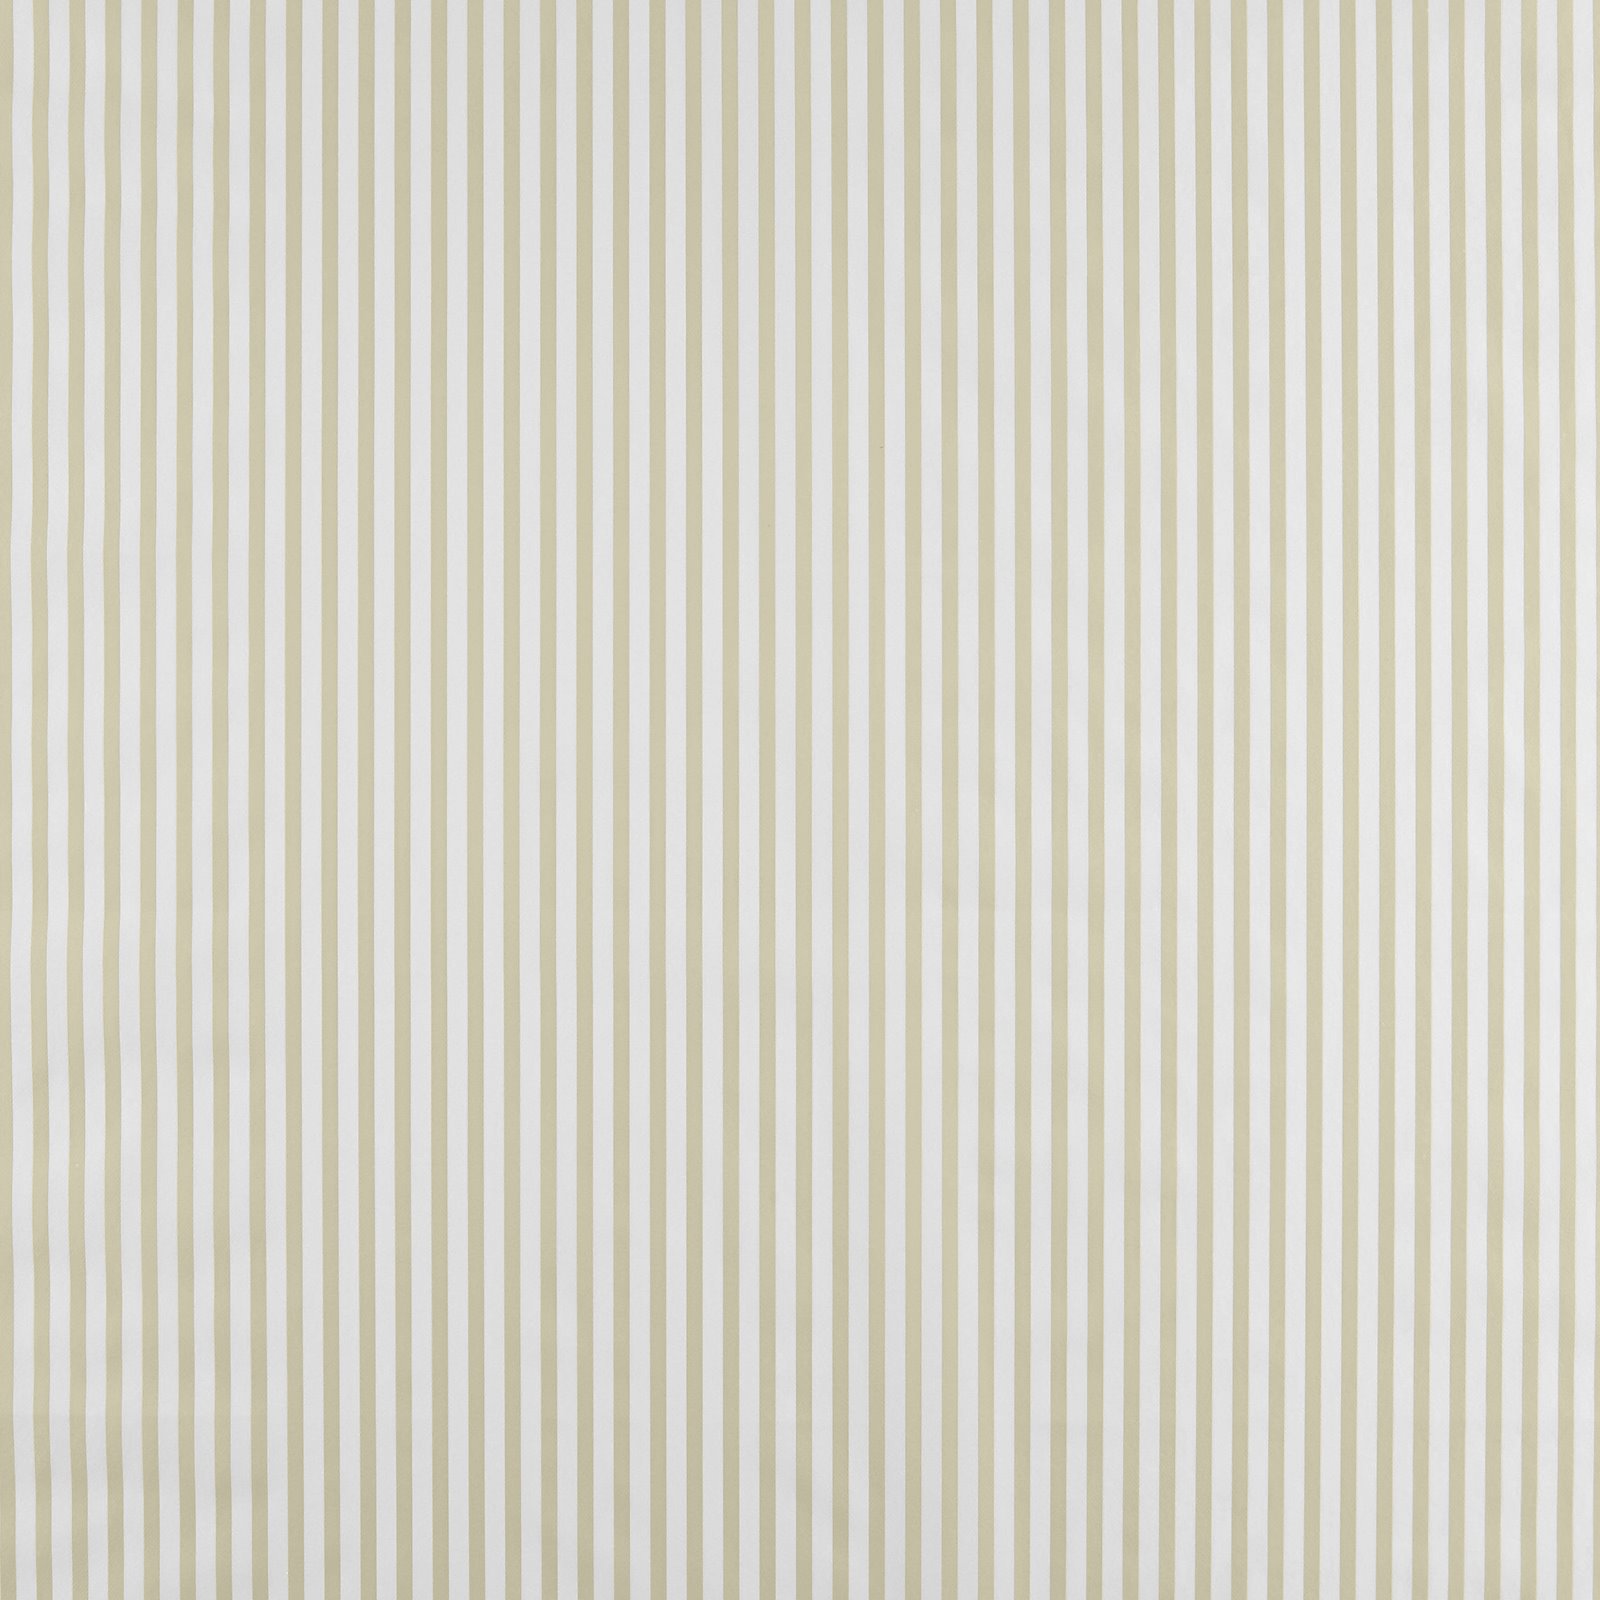 Voksduk sand/hvit striper 860495_pack_sp